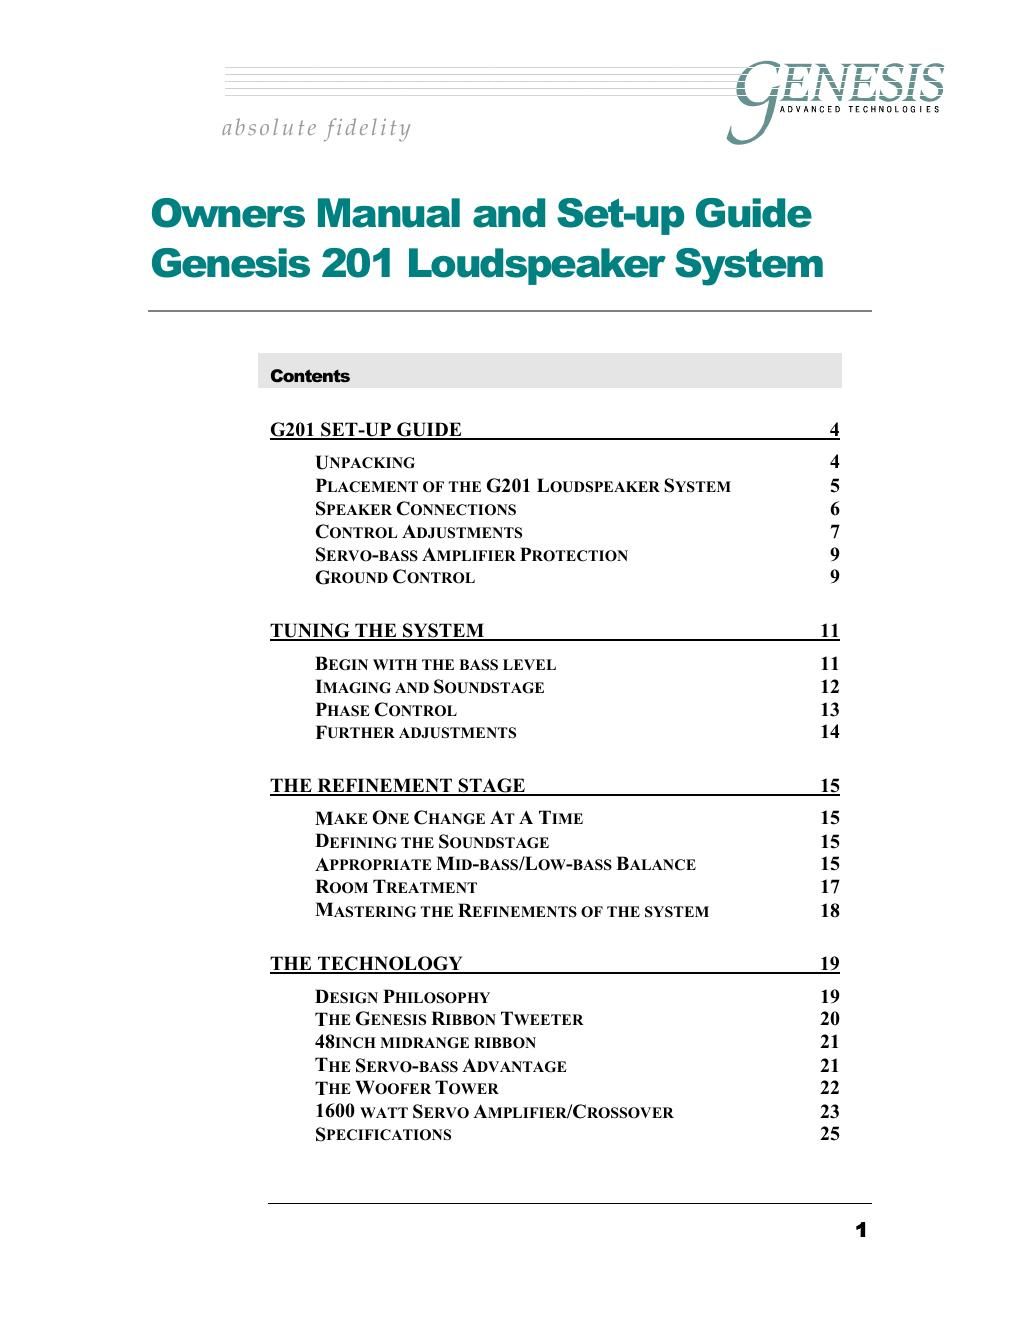 genesis 201 owners manual